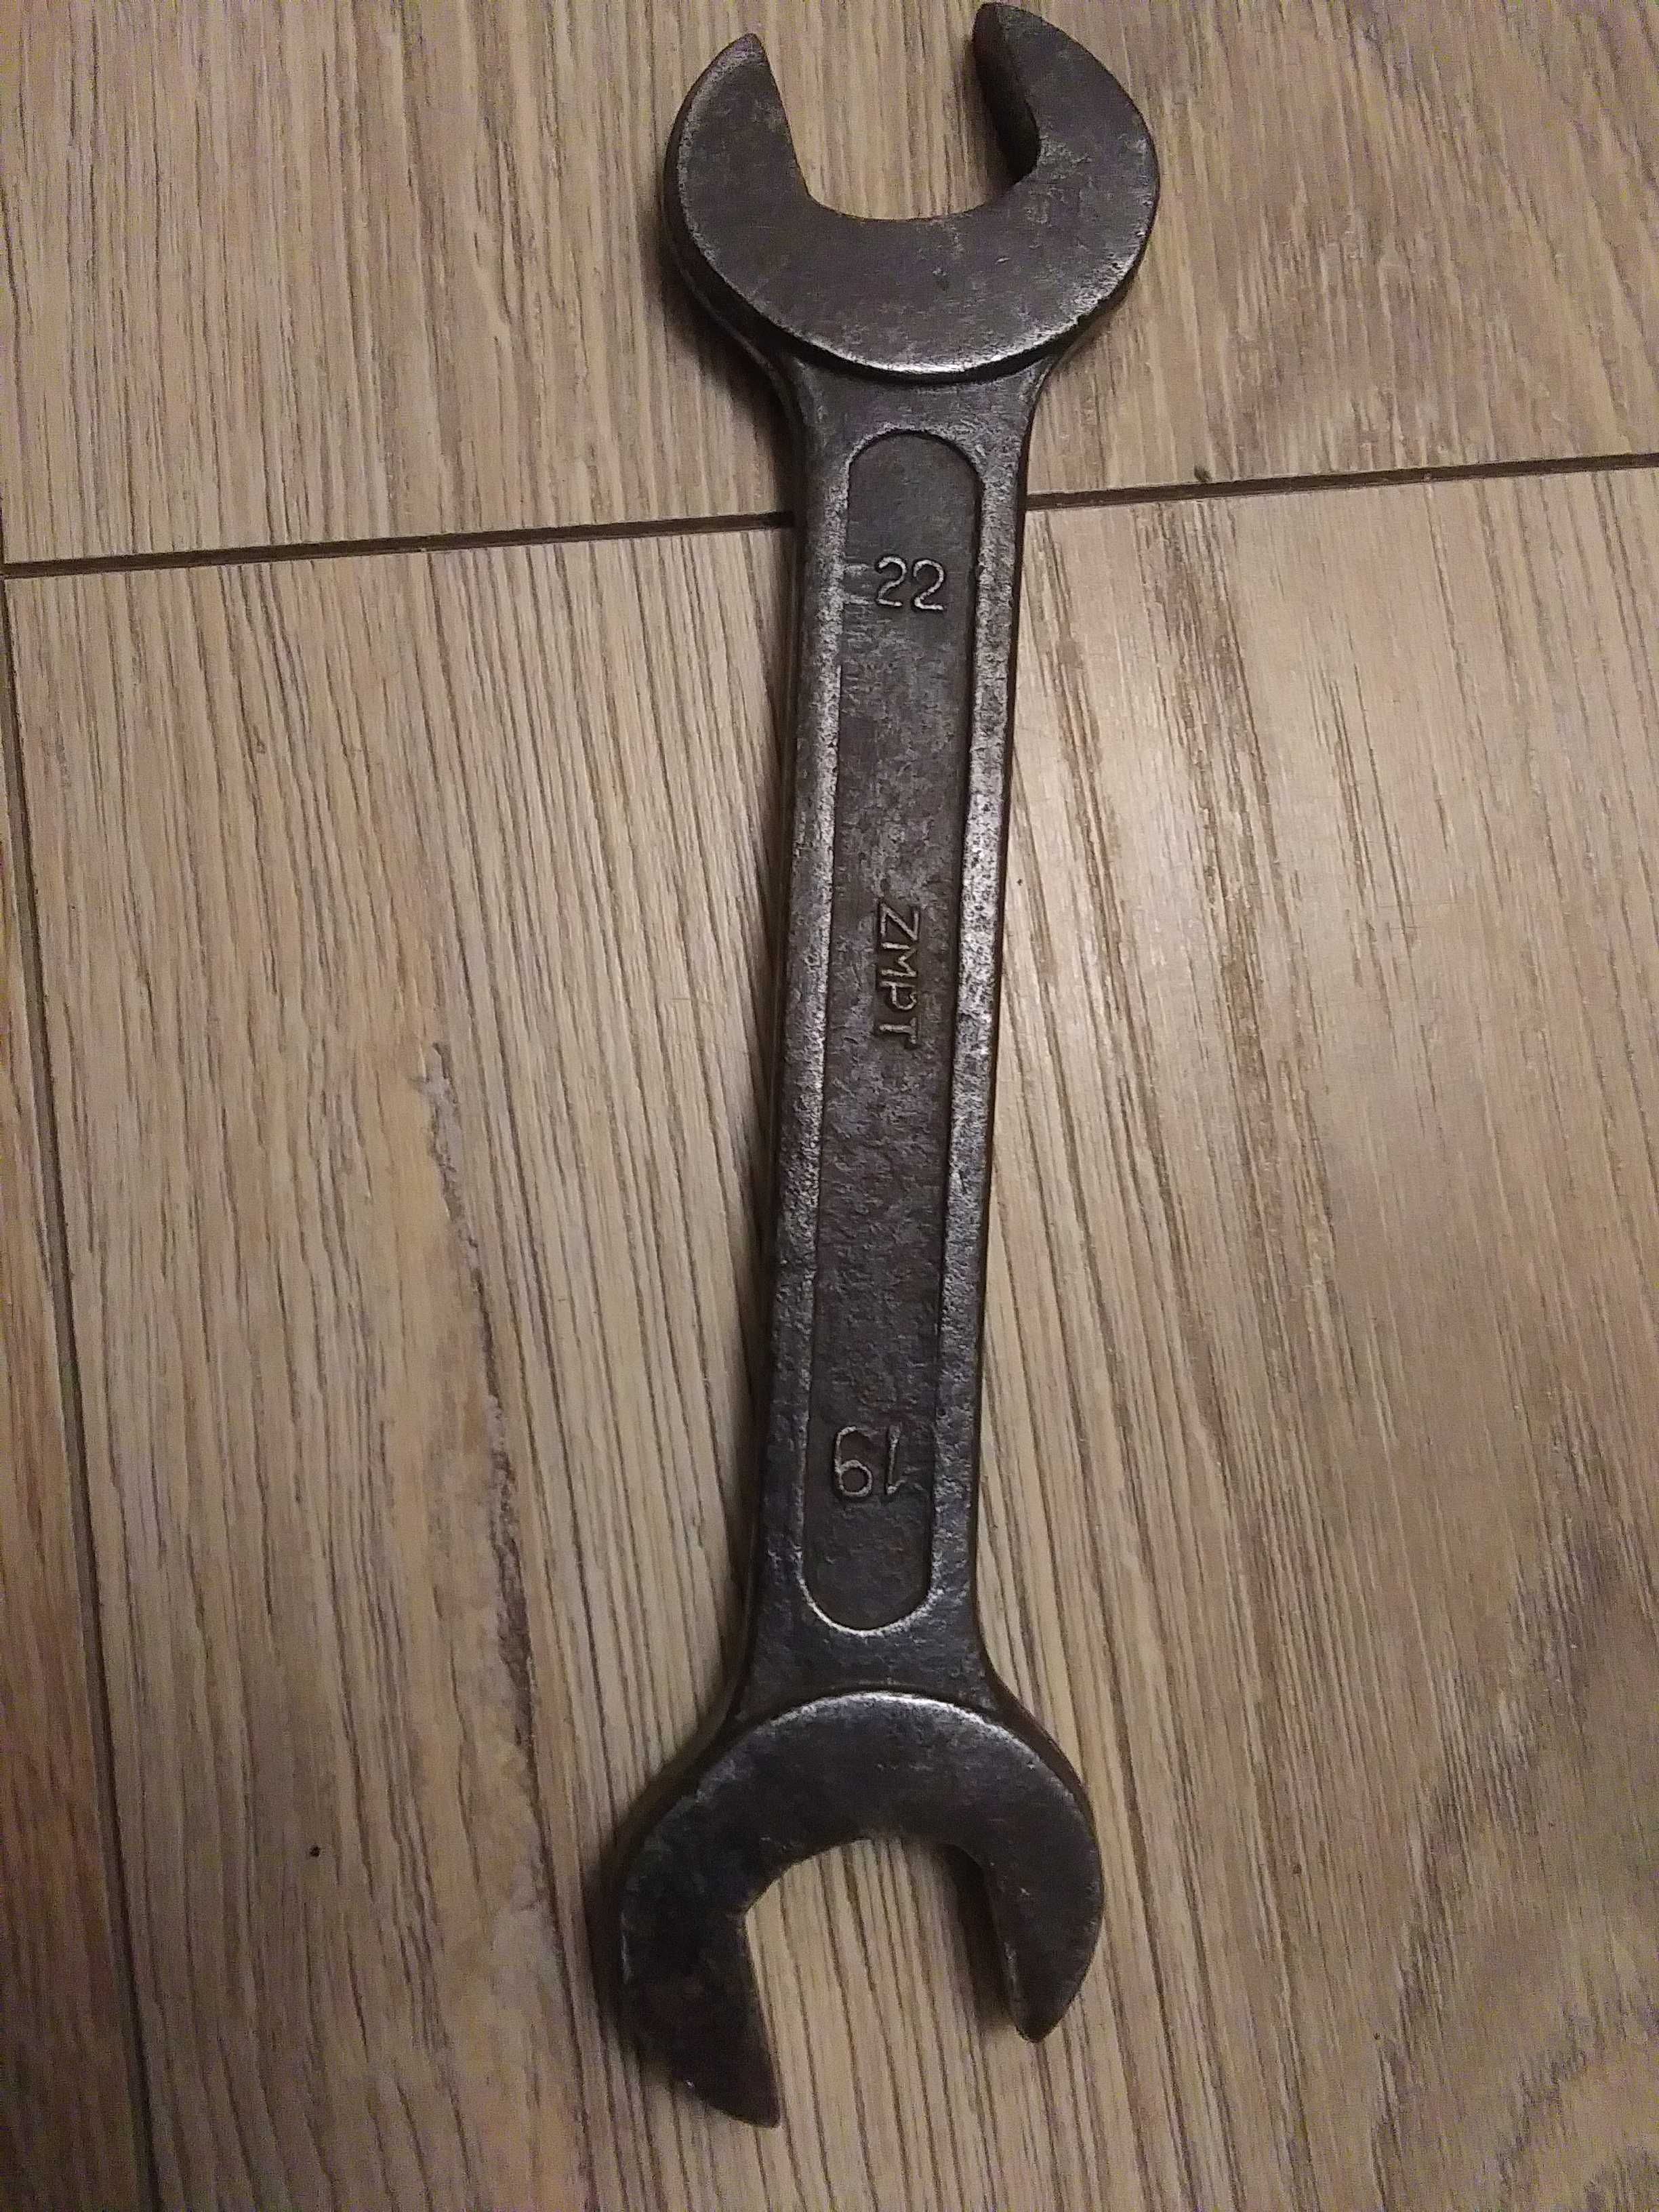 Stary płaski klucz 19 22 mm ZMPT solidny  przedmiot narzędzia z PRL